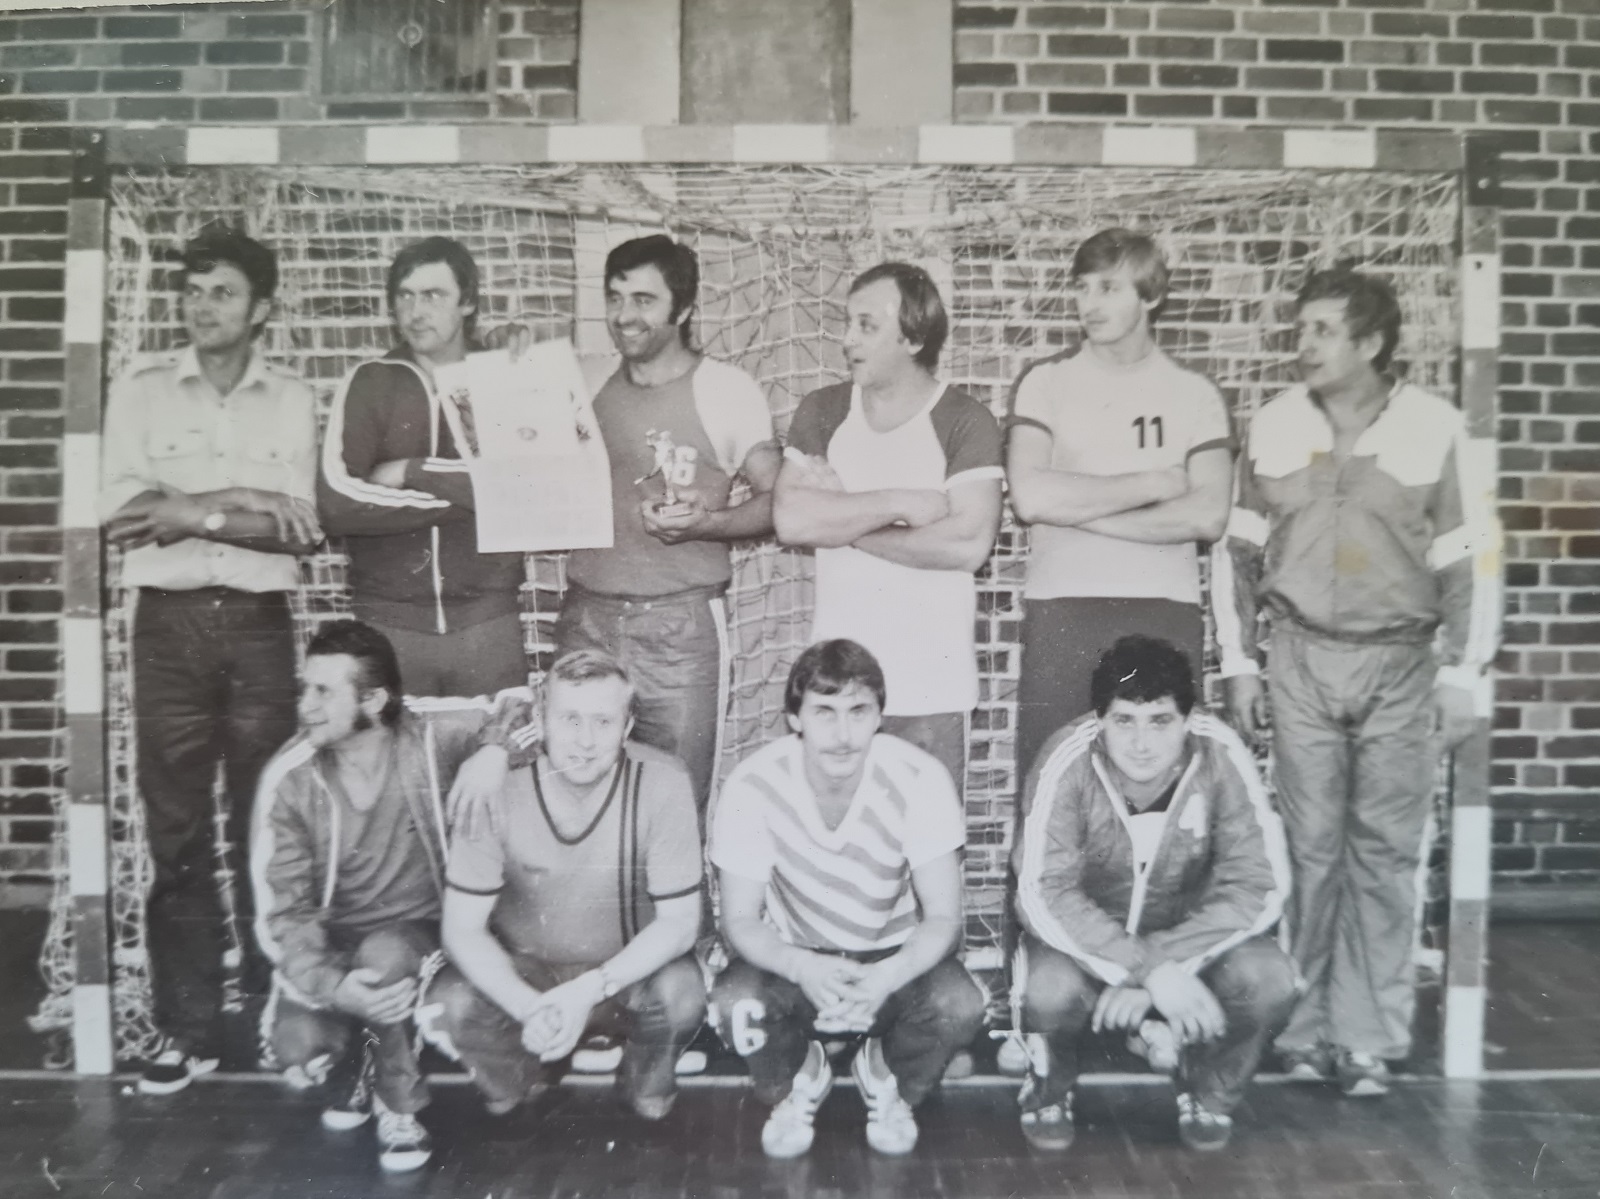 Na začátku 80.let na turnaji v Německu, horní zleva: Toman, Křížek, Stach, Štěpánek, Peška, Netrval, dolní zleva: Hríb, V.Šanda, Šindelář, Zajac